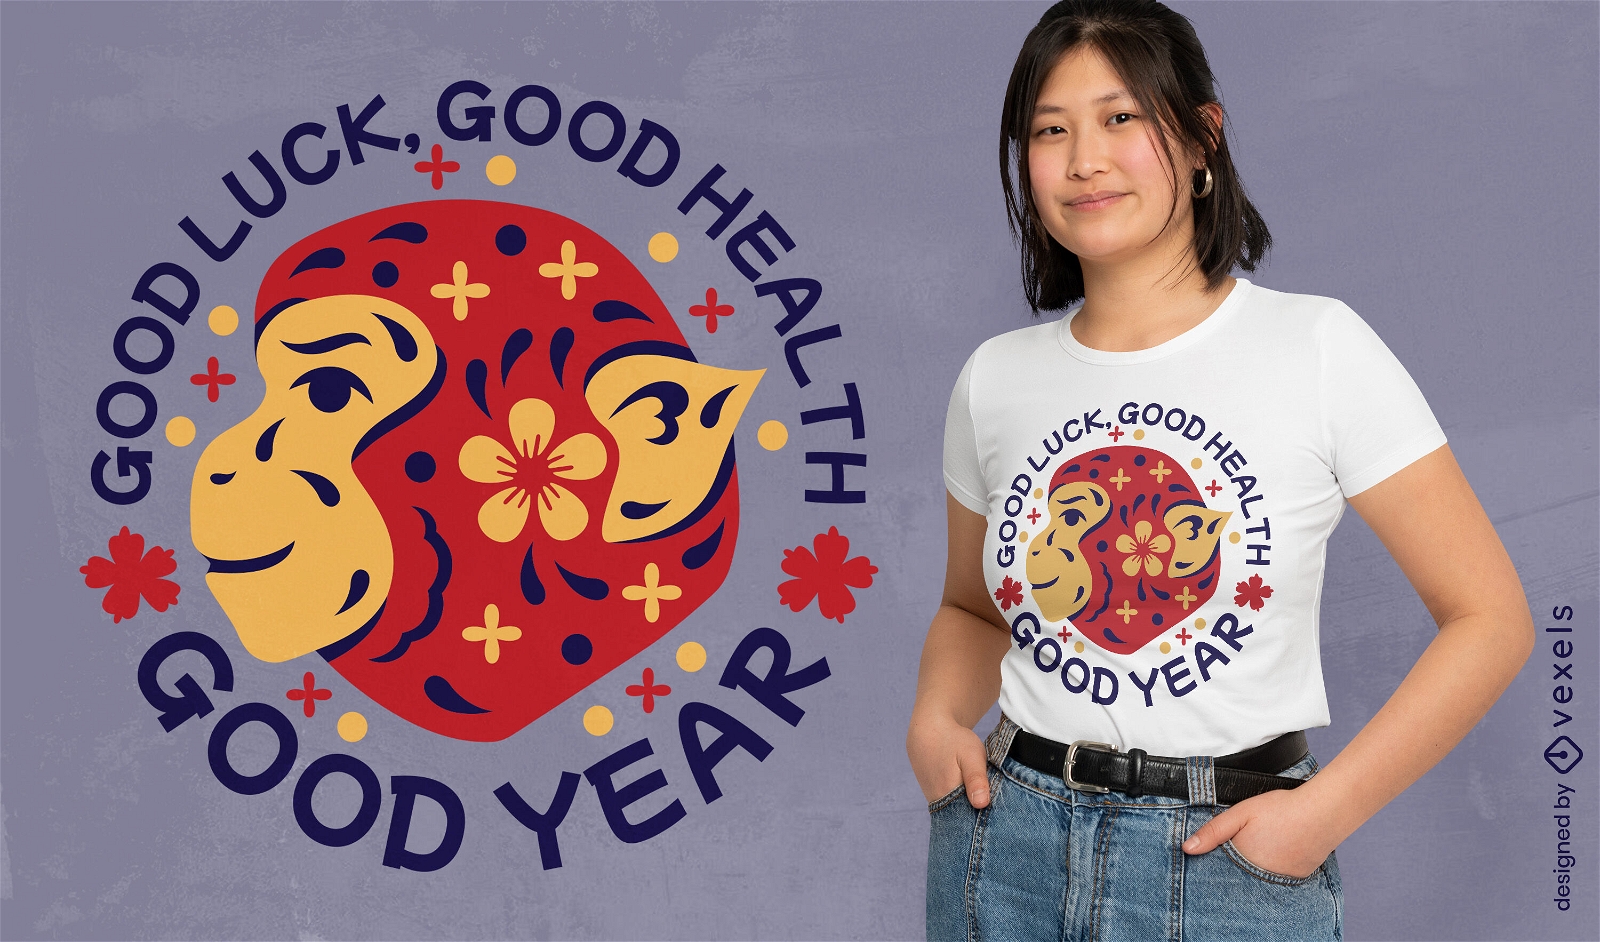 Glückwunsch-T-Shirt-Design für ein erfolgreiches Jahr